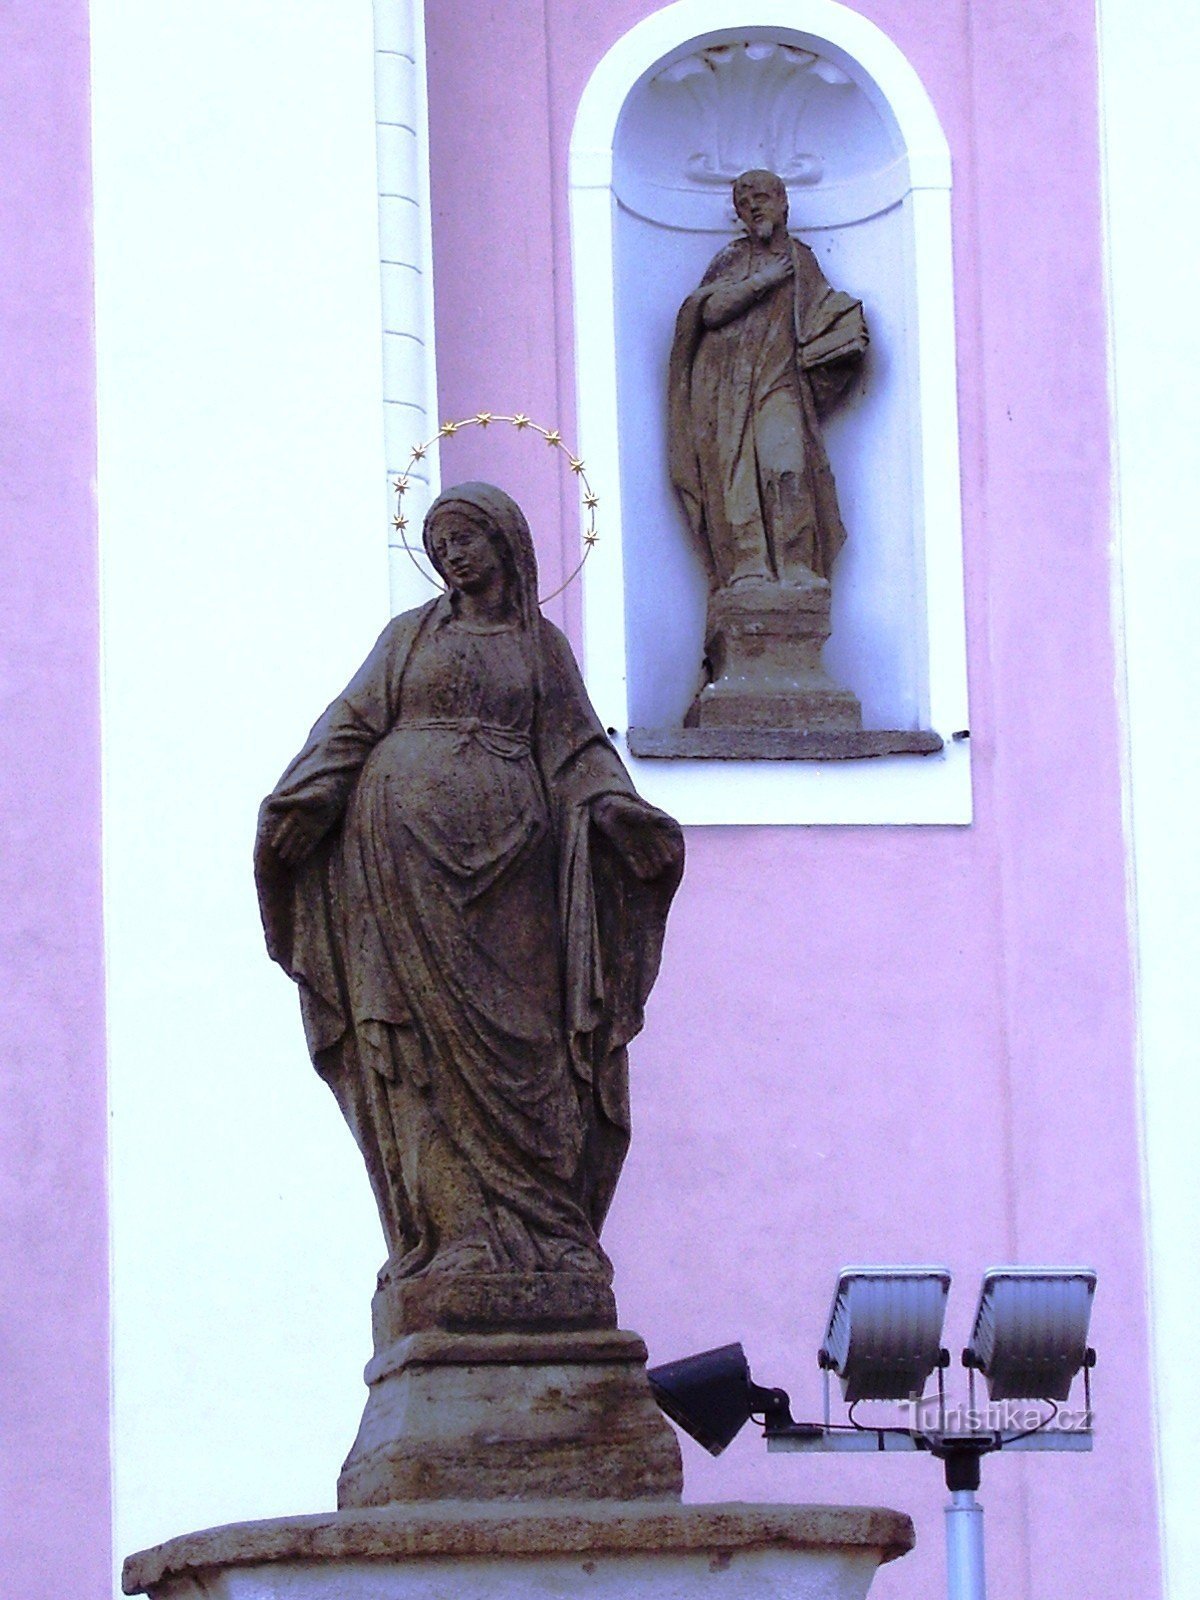 Nové Veselí - nhà thờ và tượng